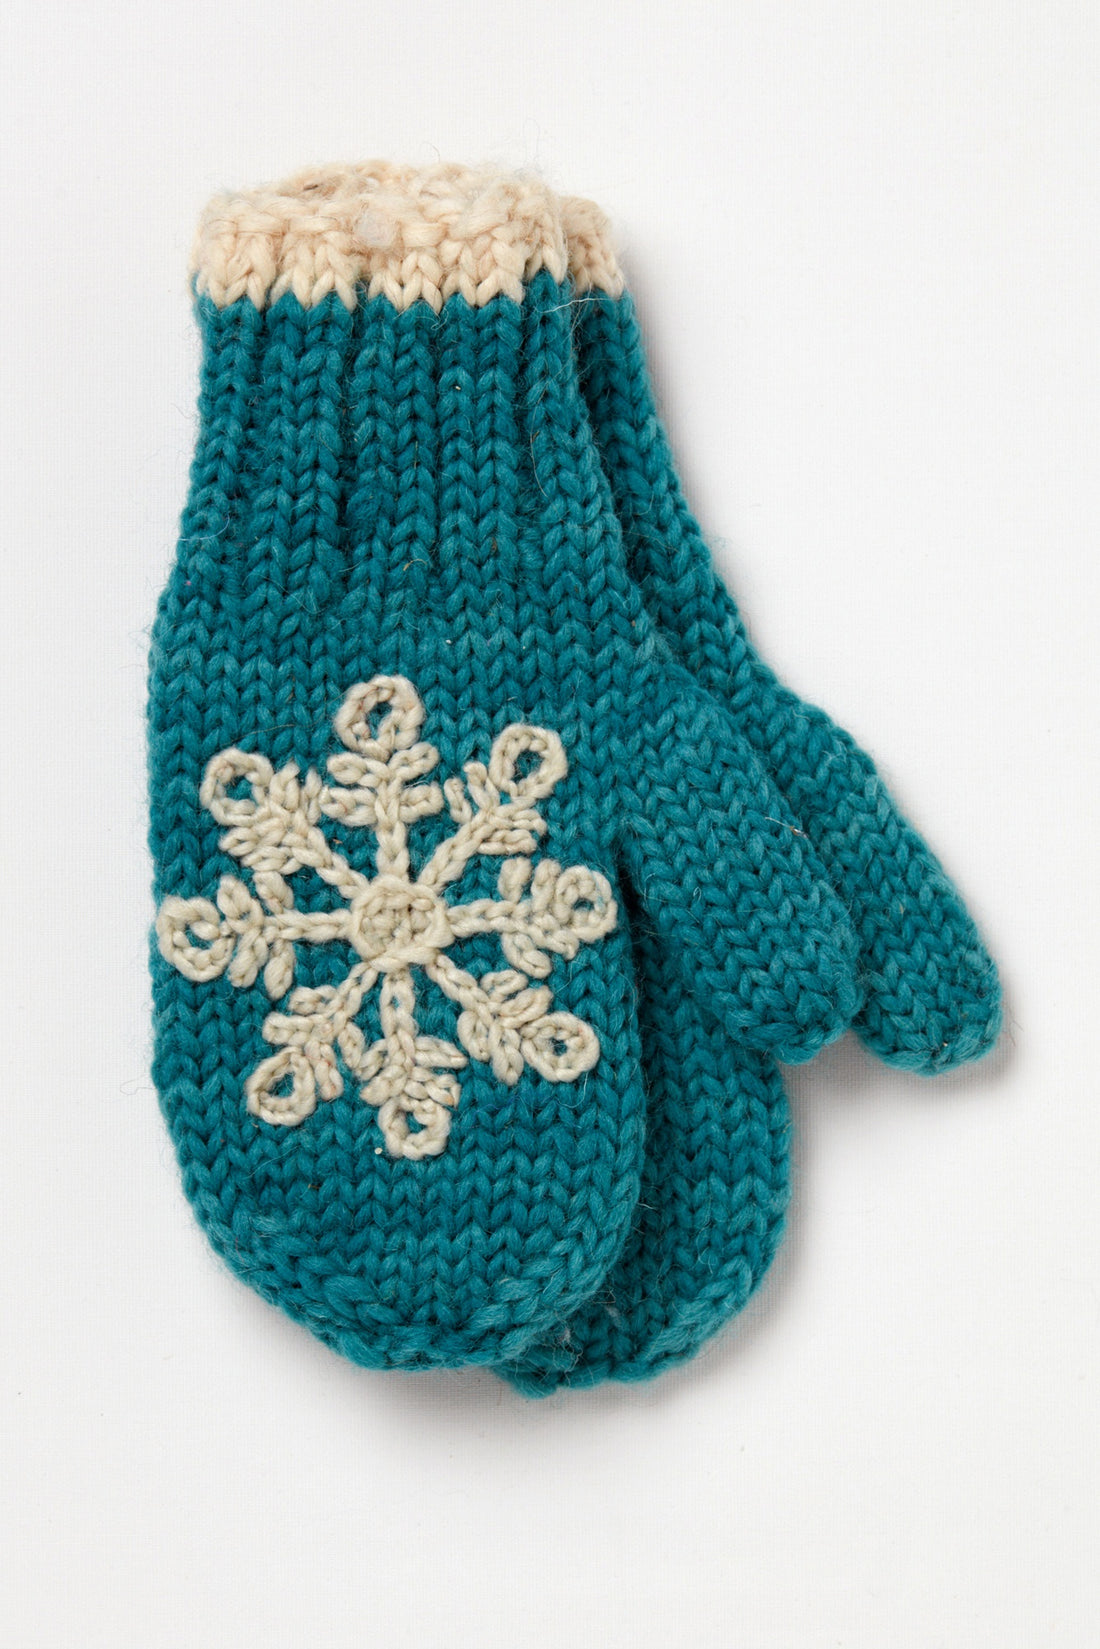 Snowflake Wool Gloves